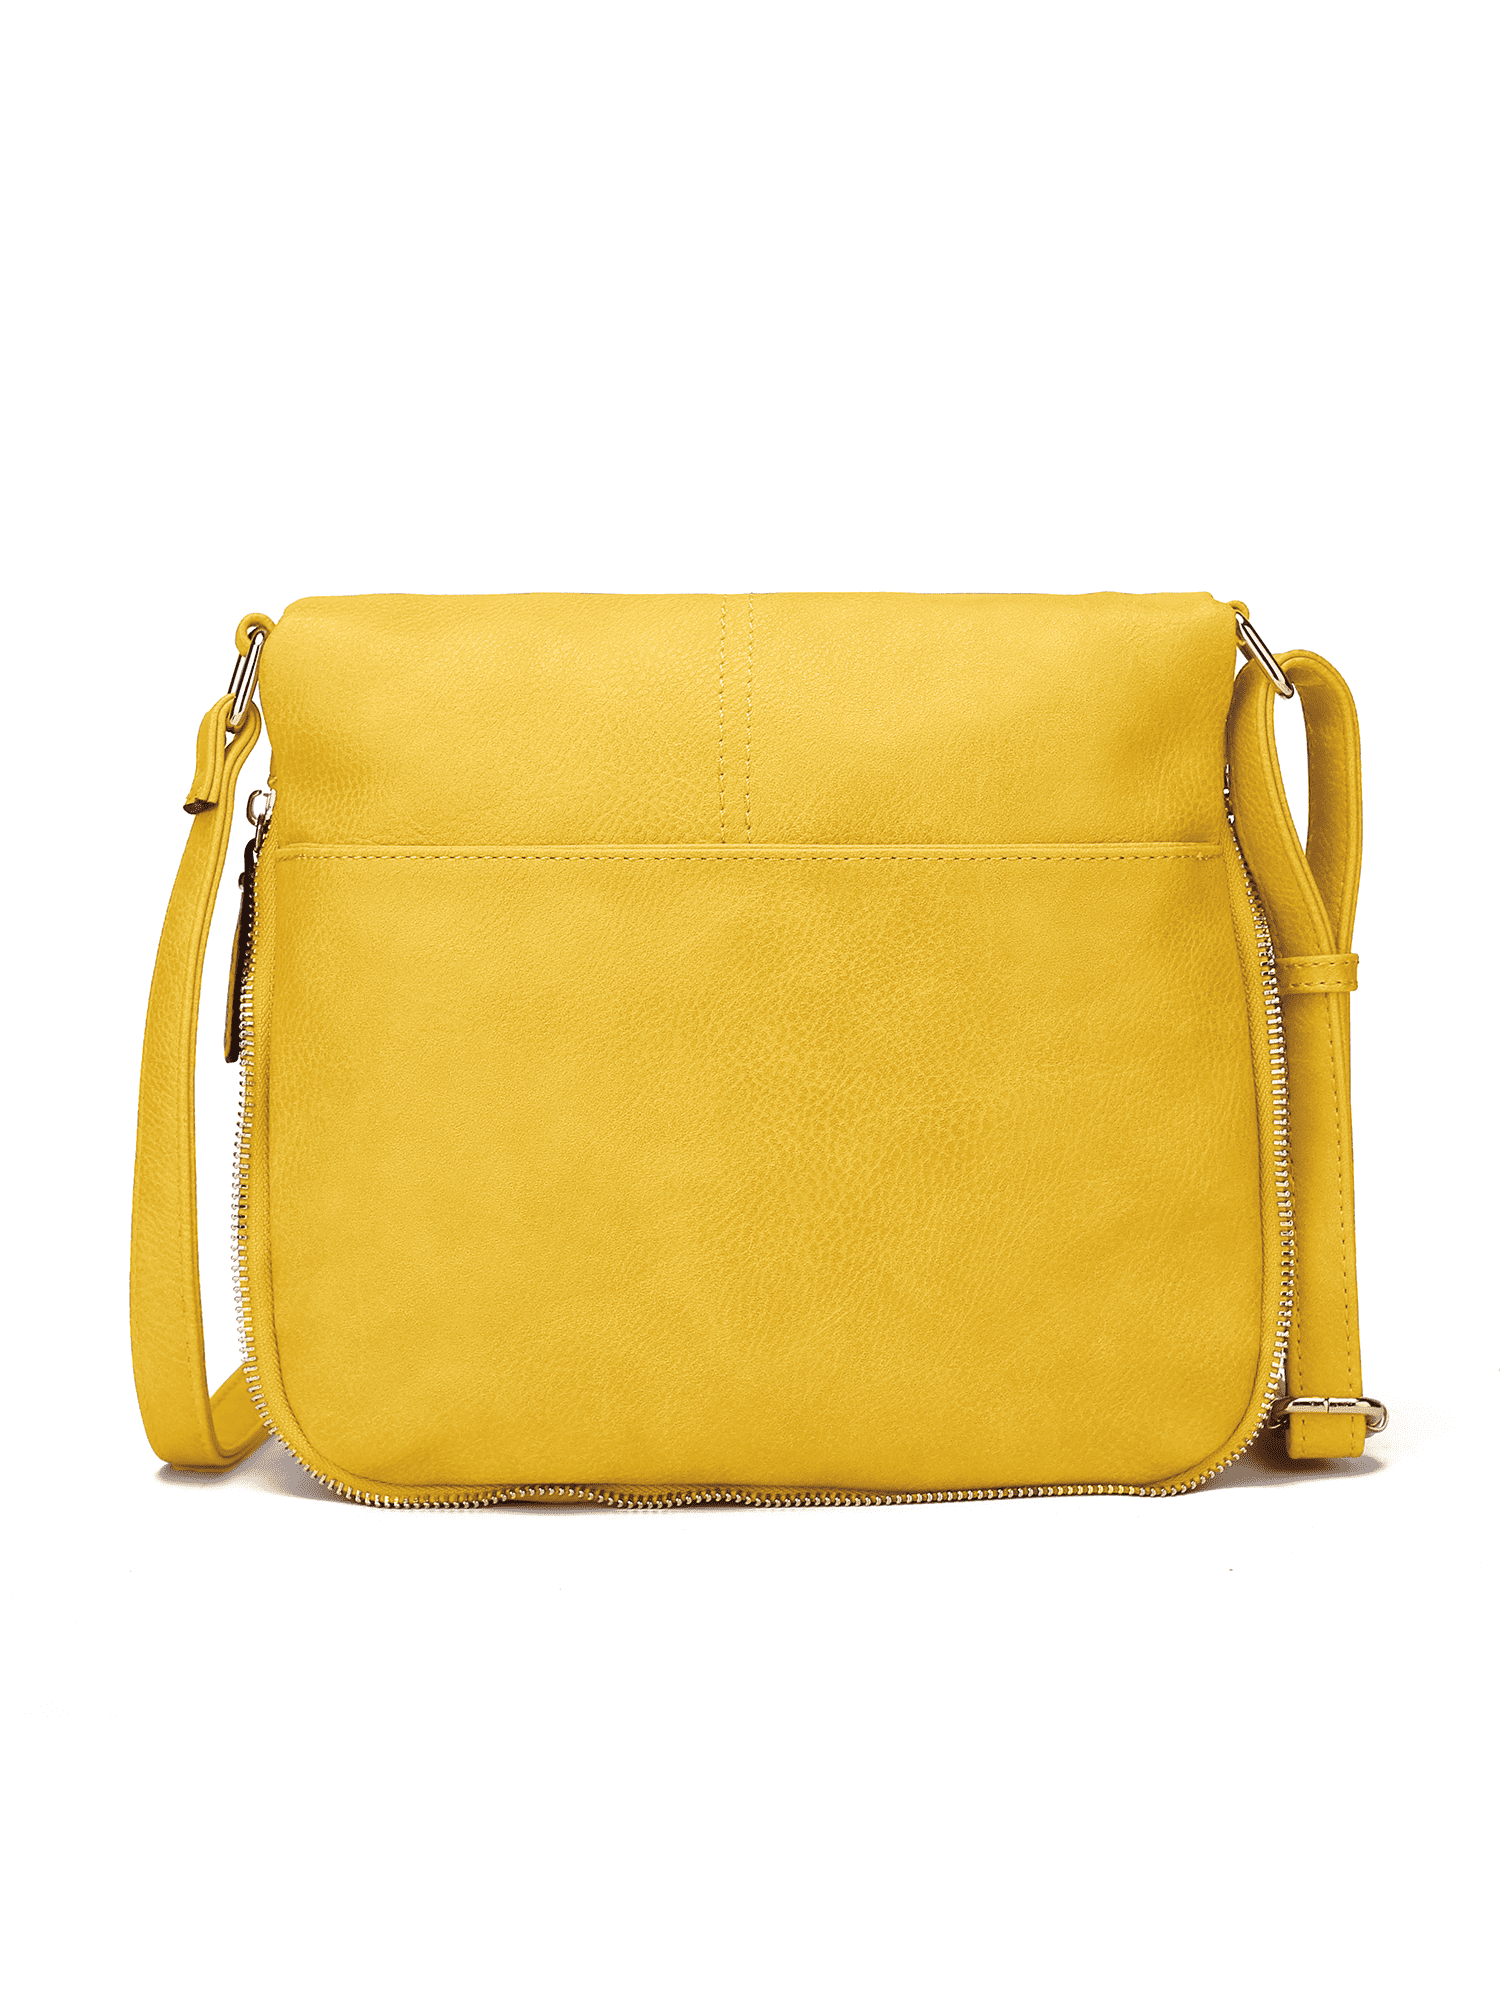 MKF Crossbody Bag for Women, Wristlet Handle – PU Leather Messenger Purse –  Adjustable Shoulder Strap Handbag